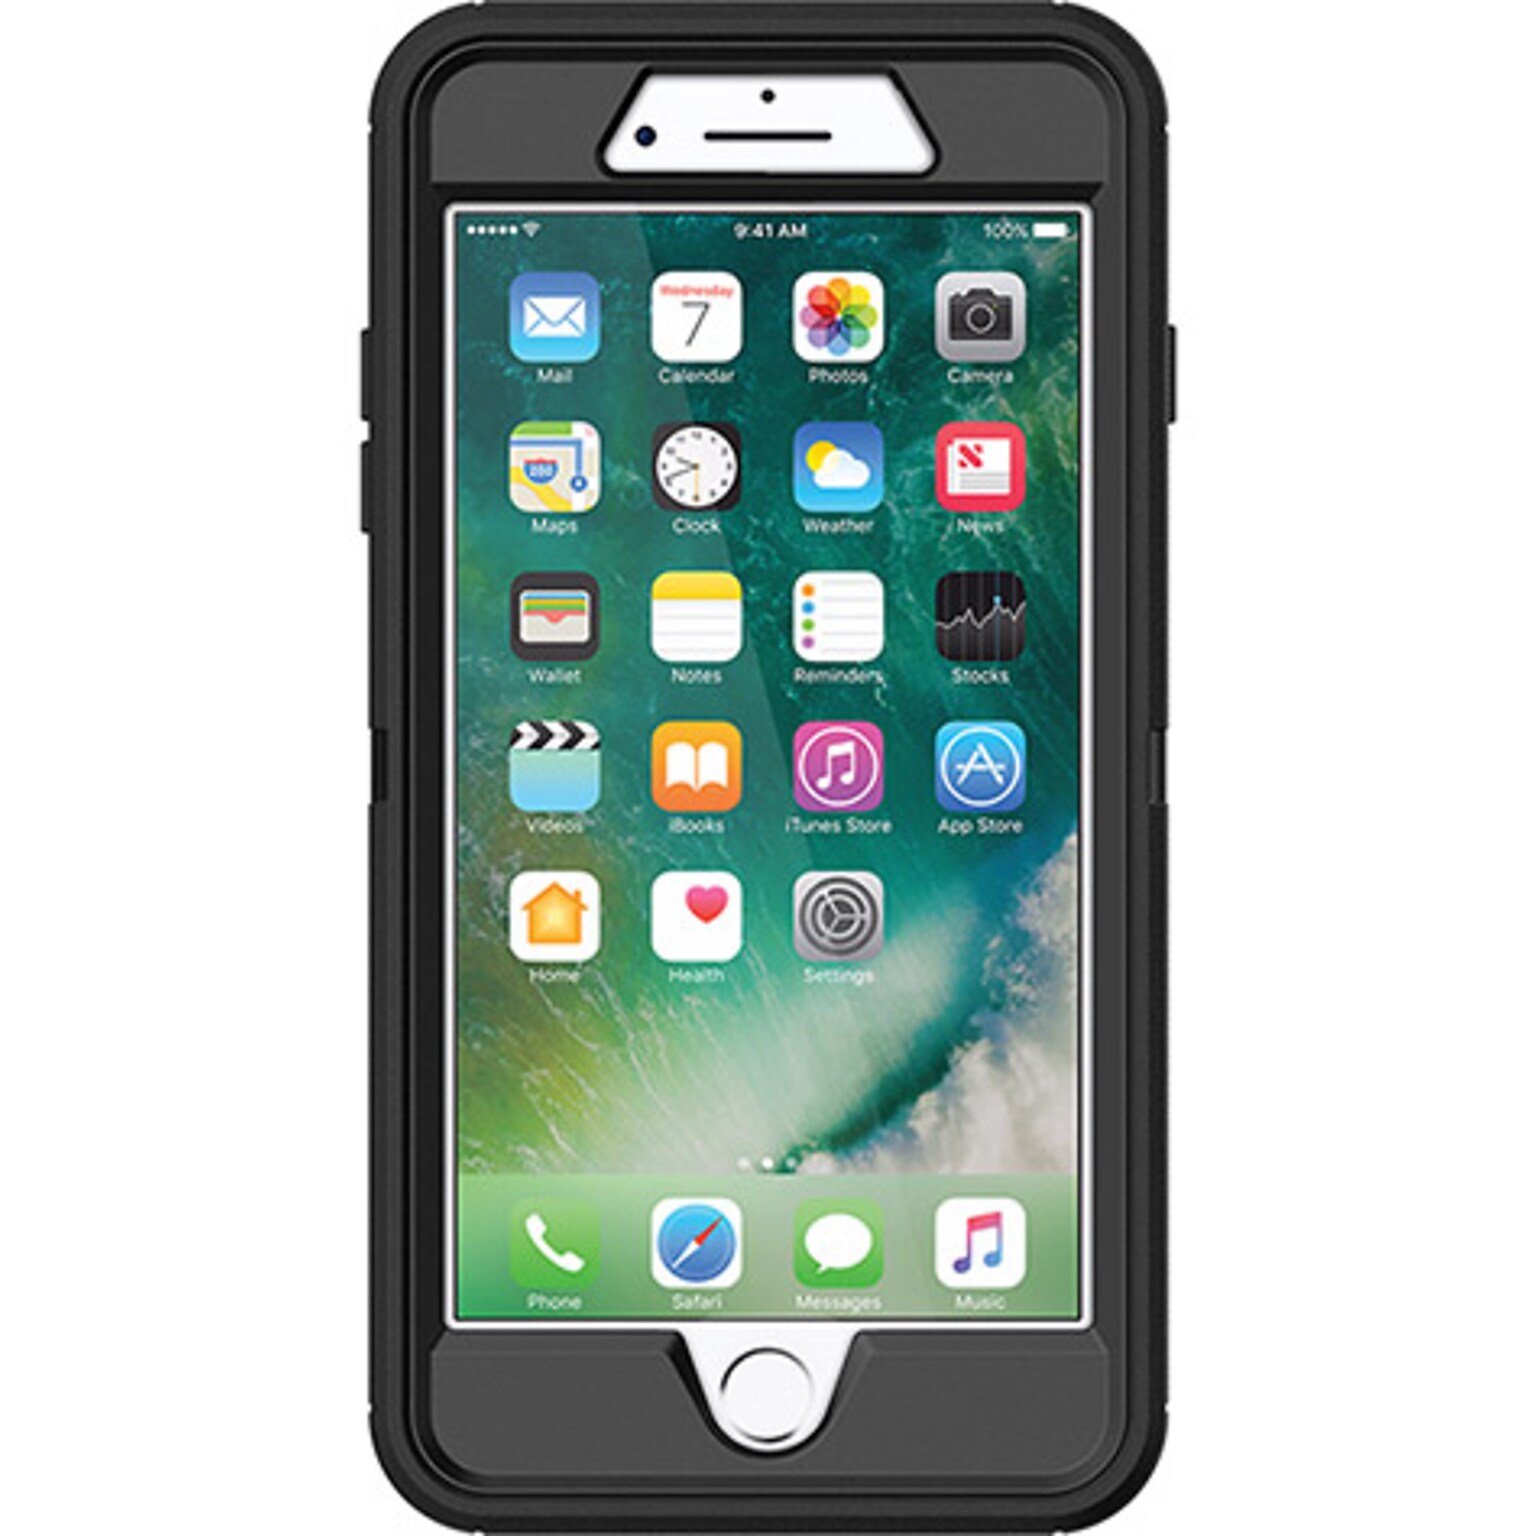 OtterBox Defender Series Black Case for iPhone 8 Plus/7 Plus (77-56825)